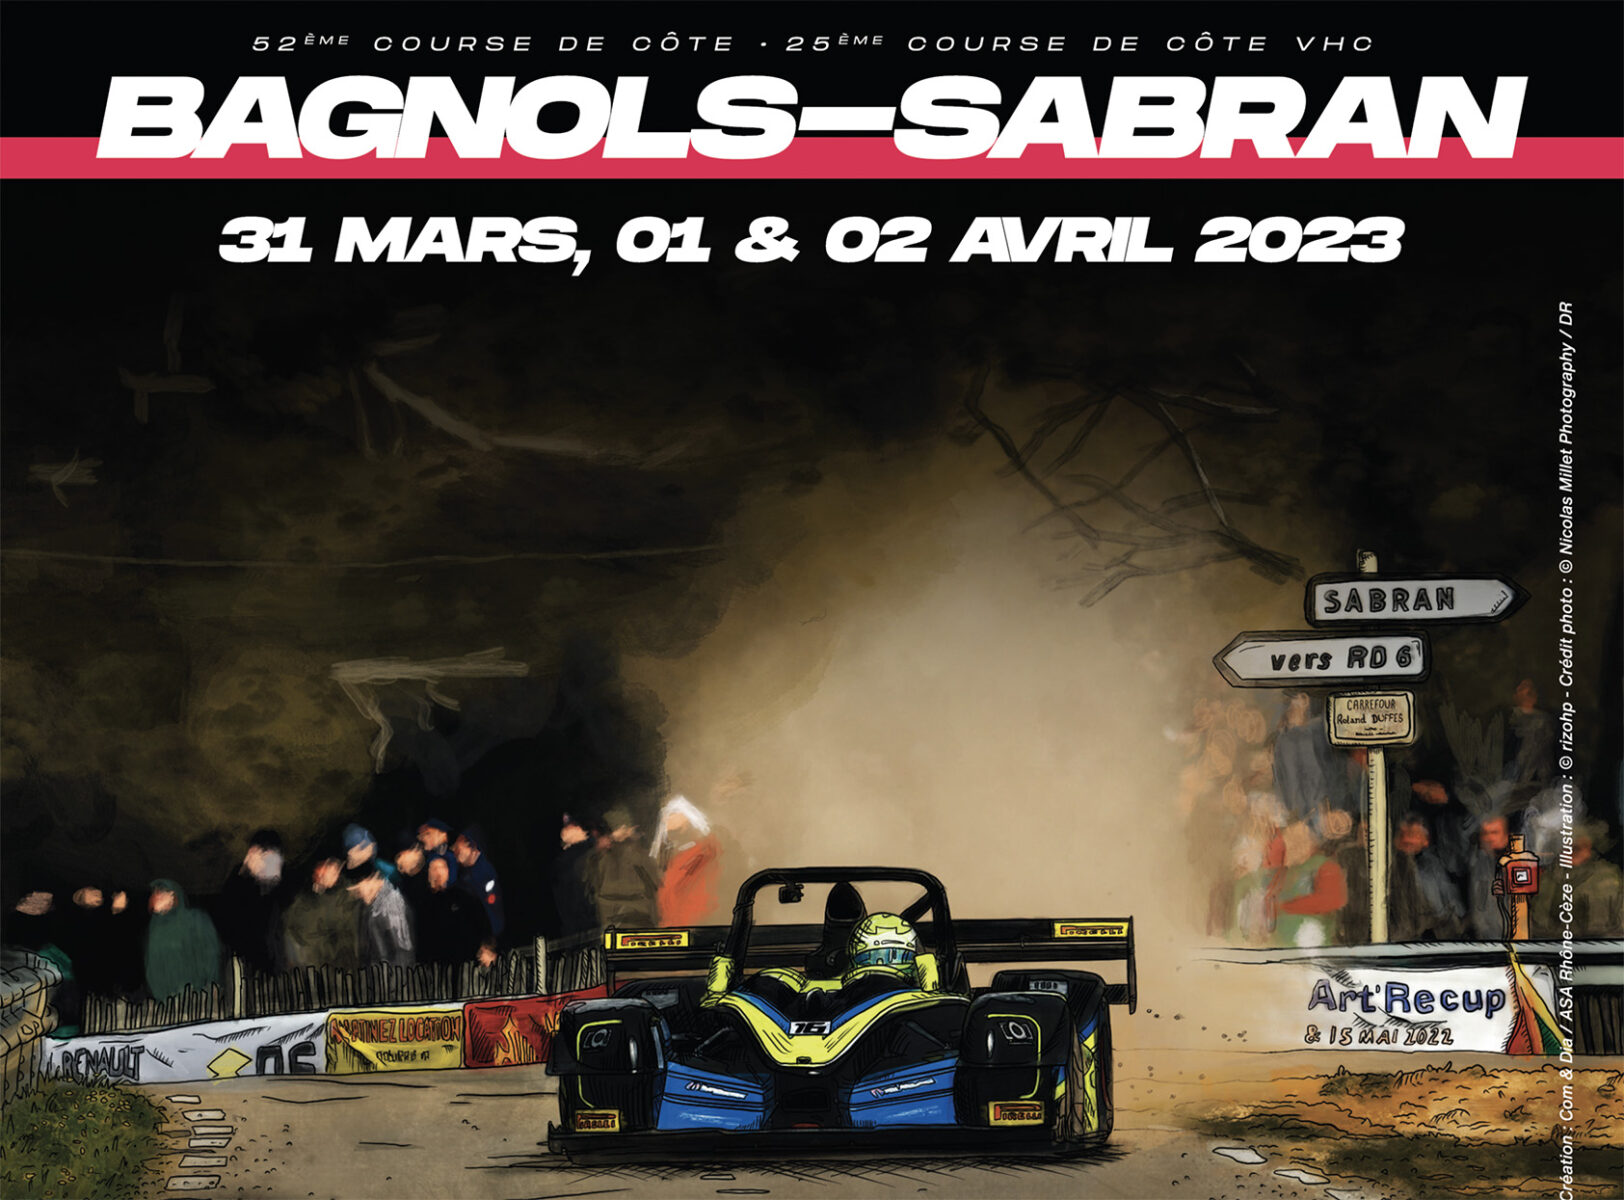 La 52eme édition de la Course de Côte de Bagnols-Sabran, un évènement incontournable pour les passionnés de sport auto